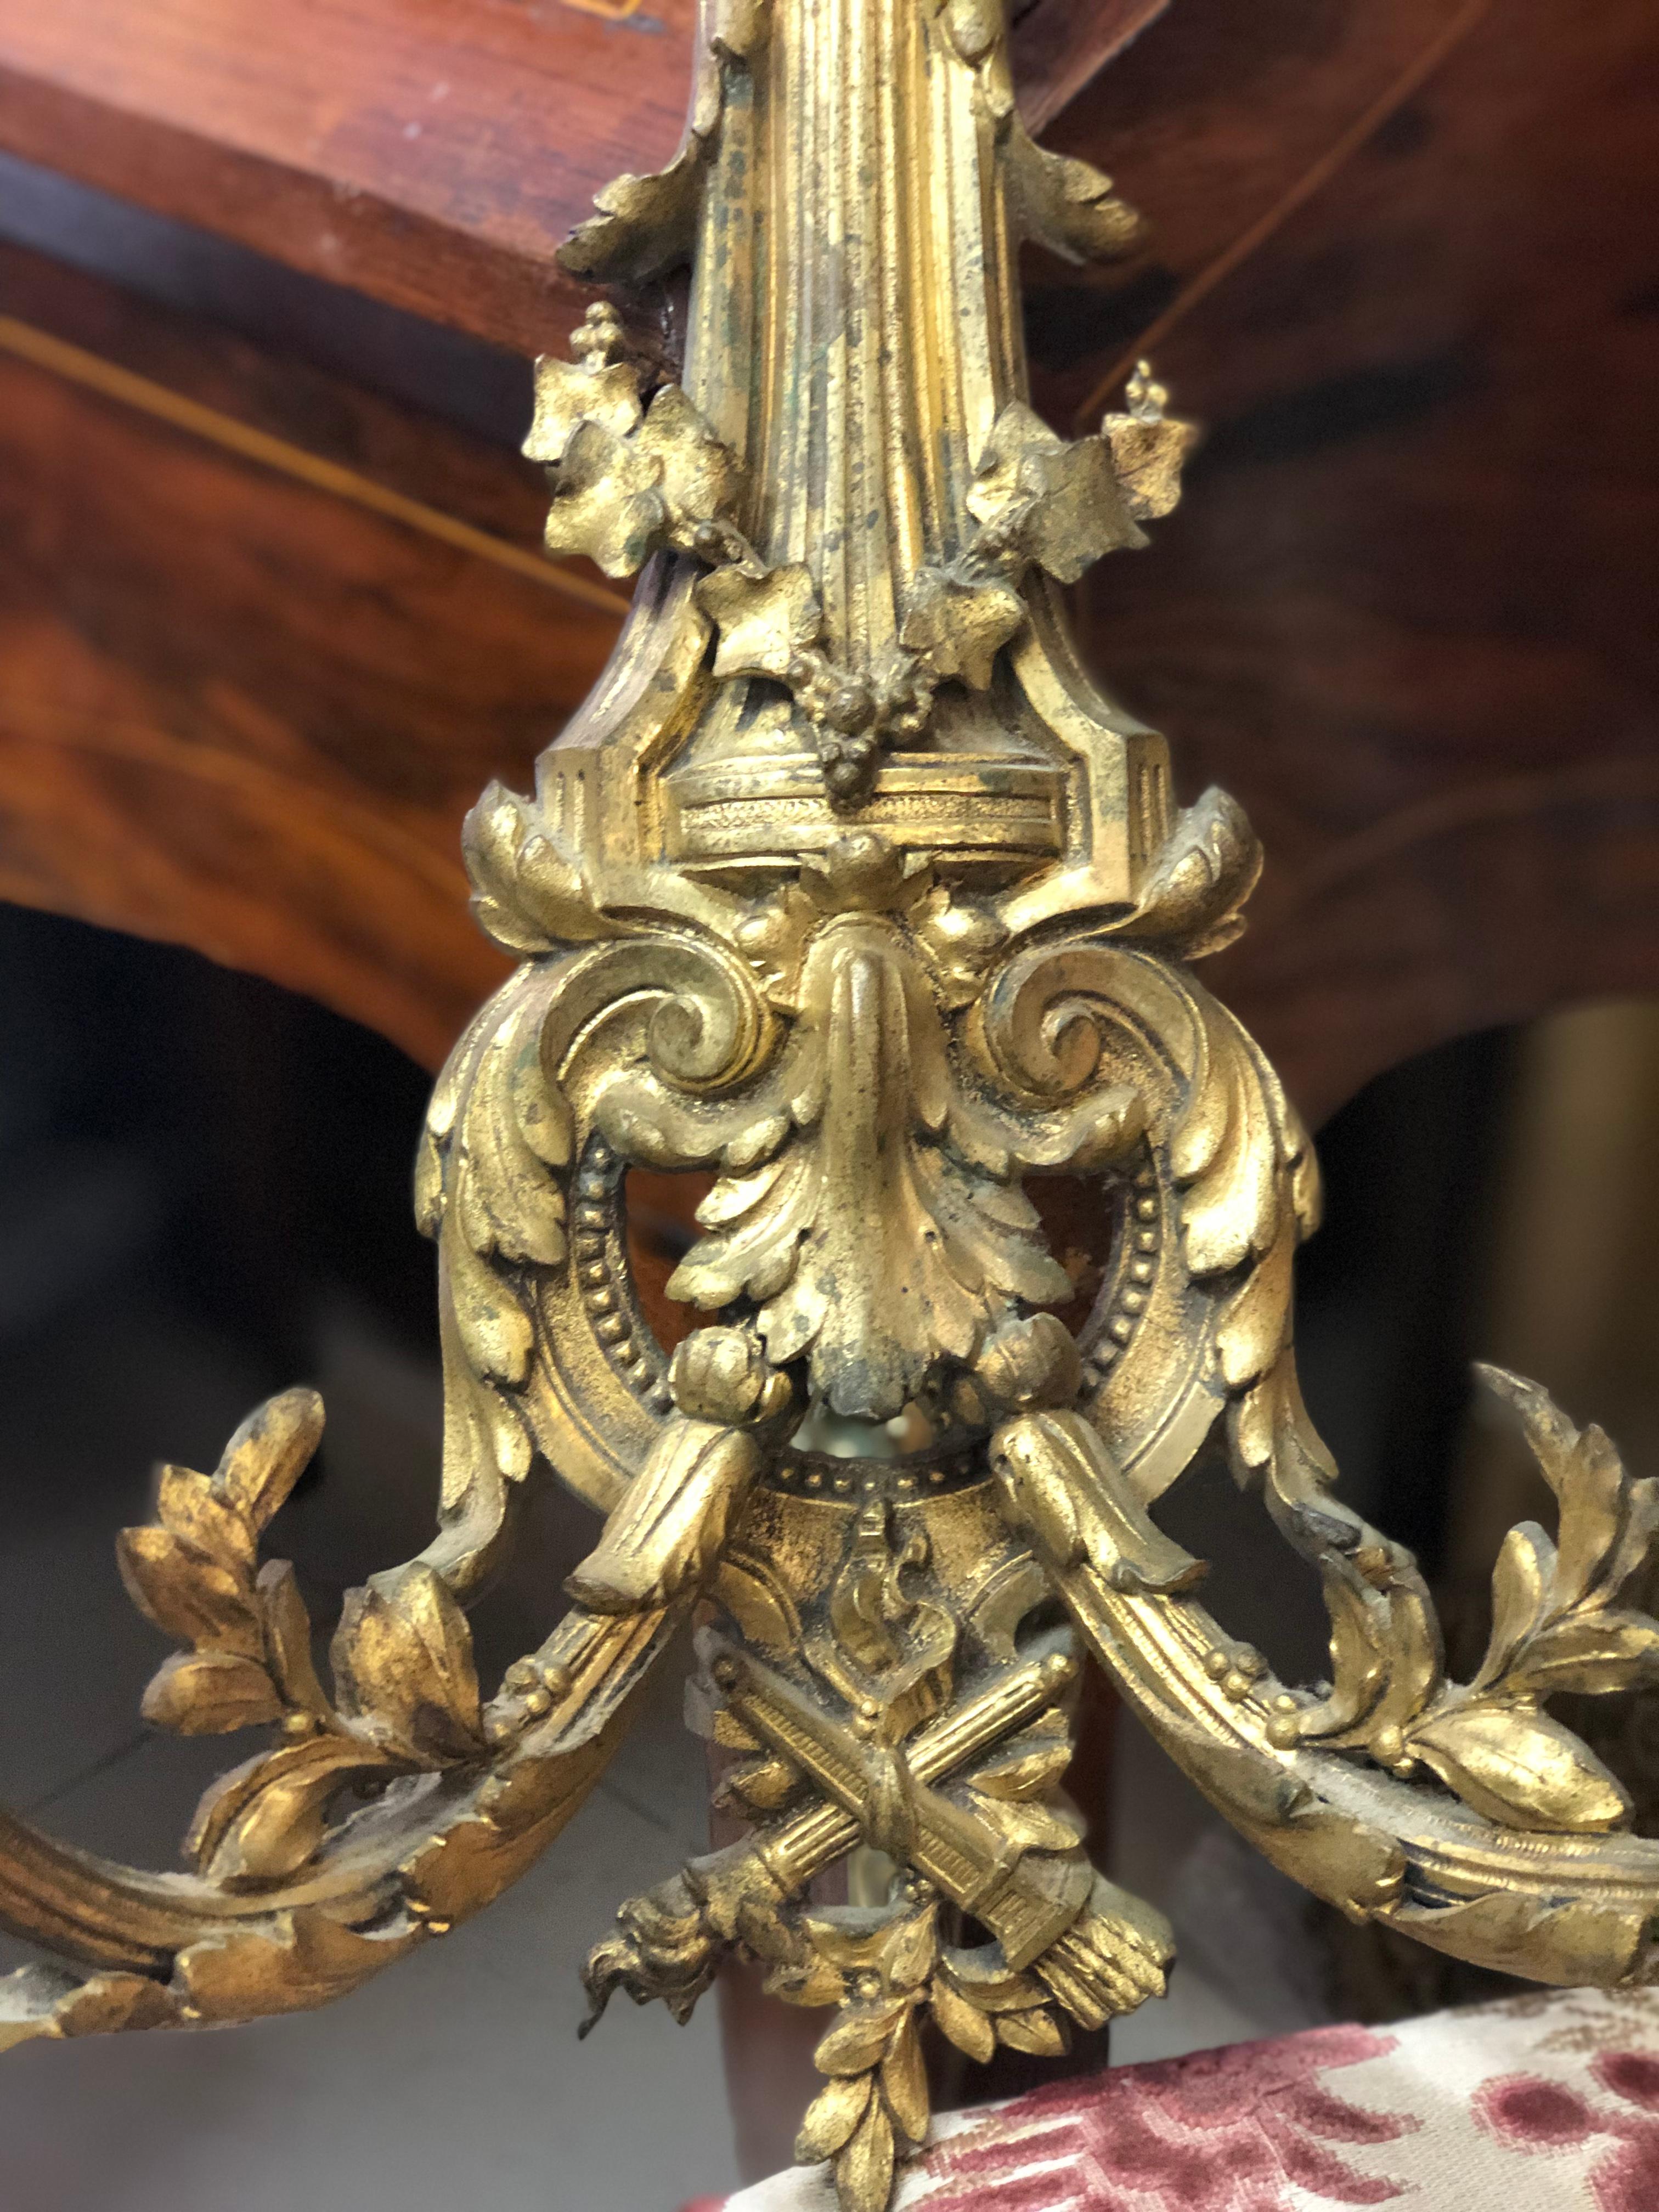 Ein Paar vergoldete Bronzewandleuchten mit zwei Armen, die jeweils unterschiedliche Kristallblumen als Schirm haben. Sie stammen aus dem späten 19. Jahrhundert und sind beide in sehr gutem Originalzustand.
